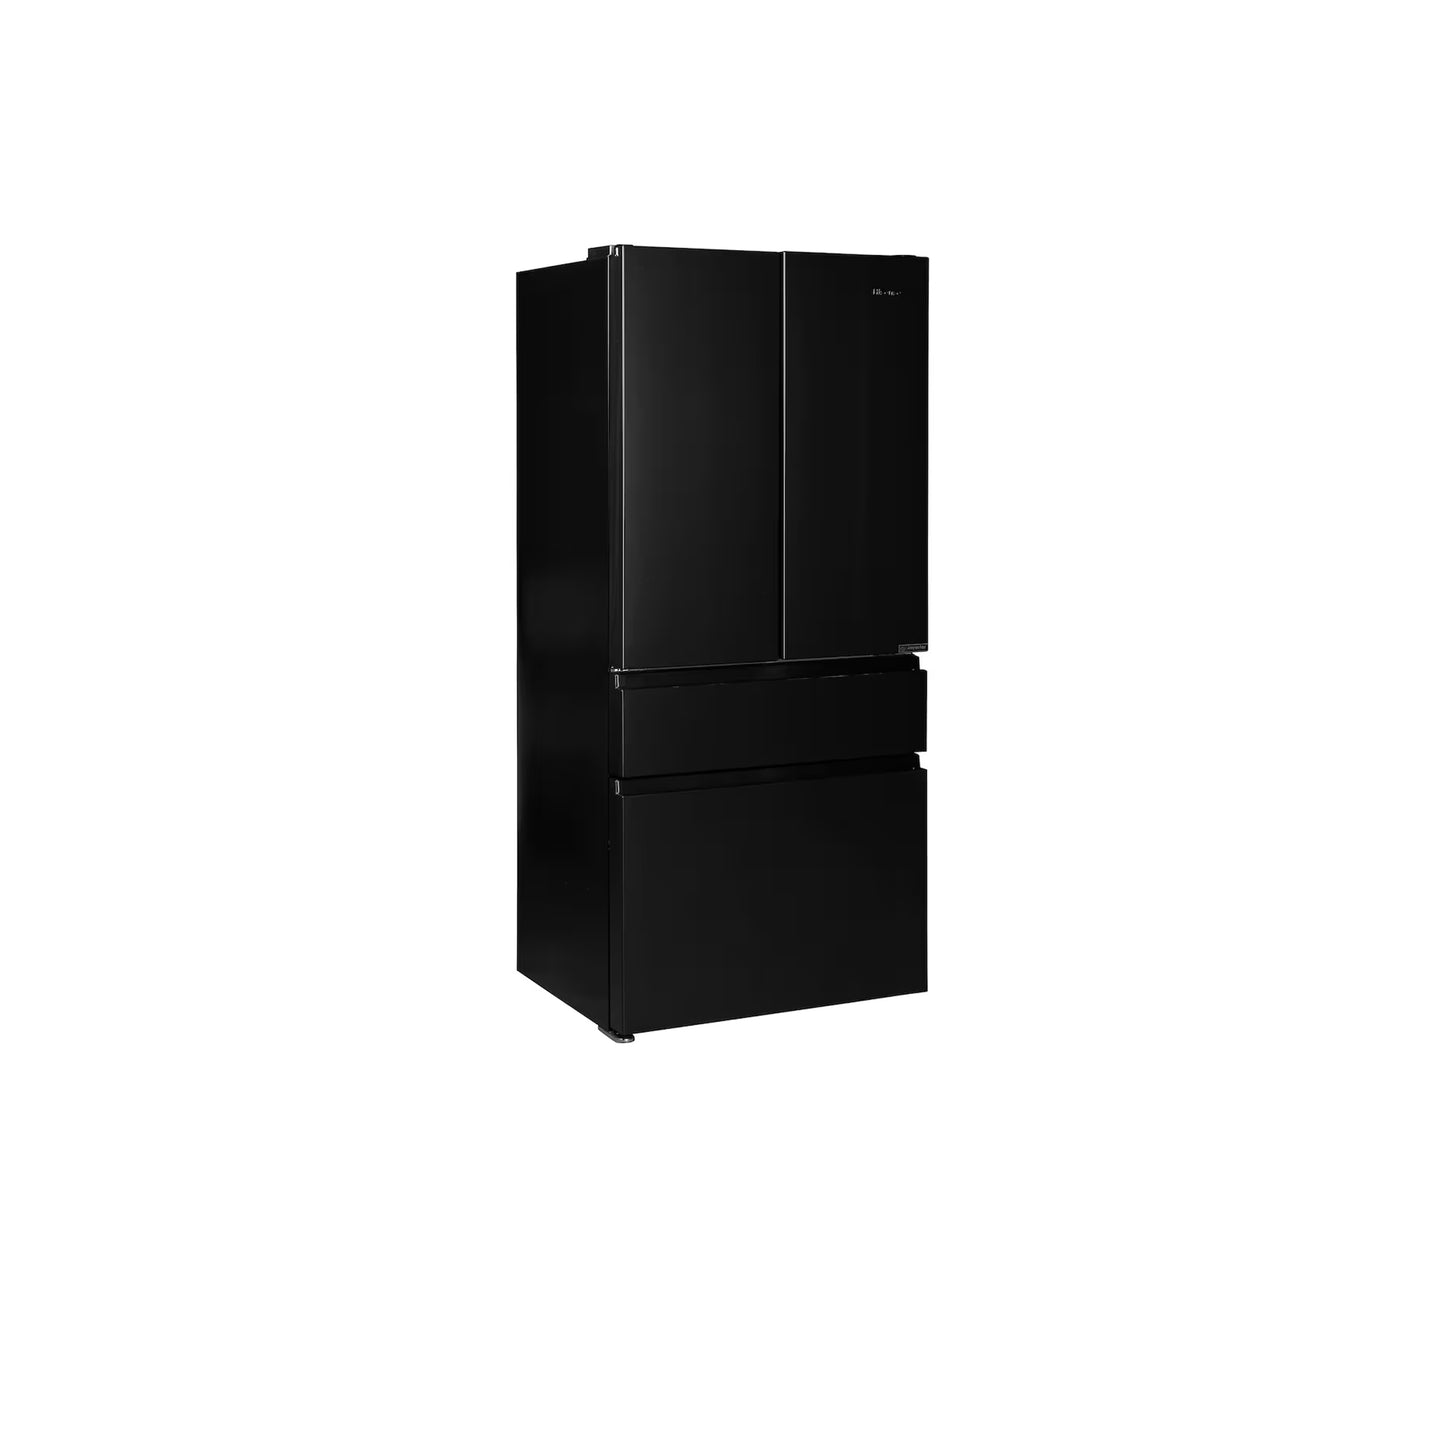 ثلاجة بباب فرنسي بأربعة أبواب مخصصة (23 قدمًا مكعبًا) مع ألوان لوحة الباب القابلة للتخصيص ومركز المشروبات™ بألواح علوية من الزجاج الأسود مع لوحة وسطى وسفلية من الفولاذ البحري. 